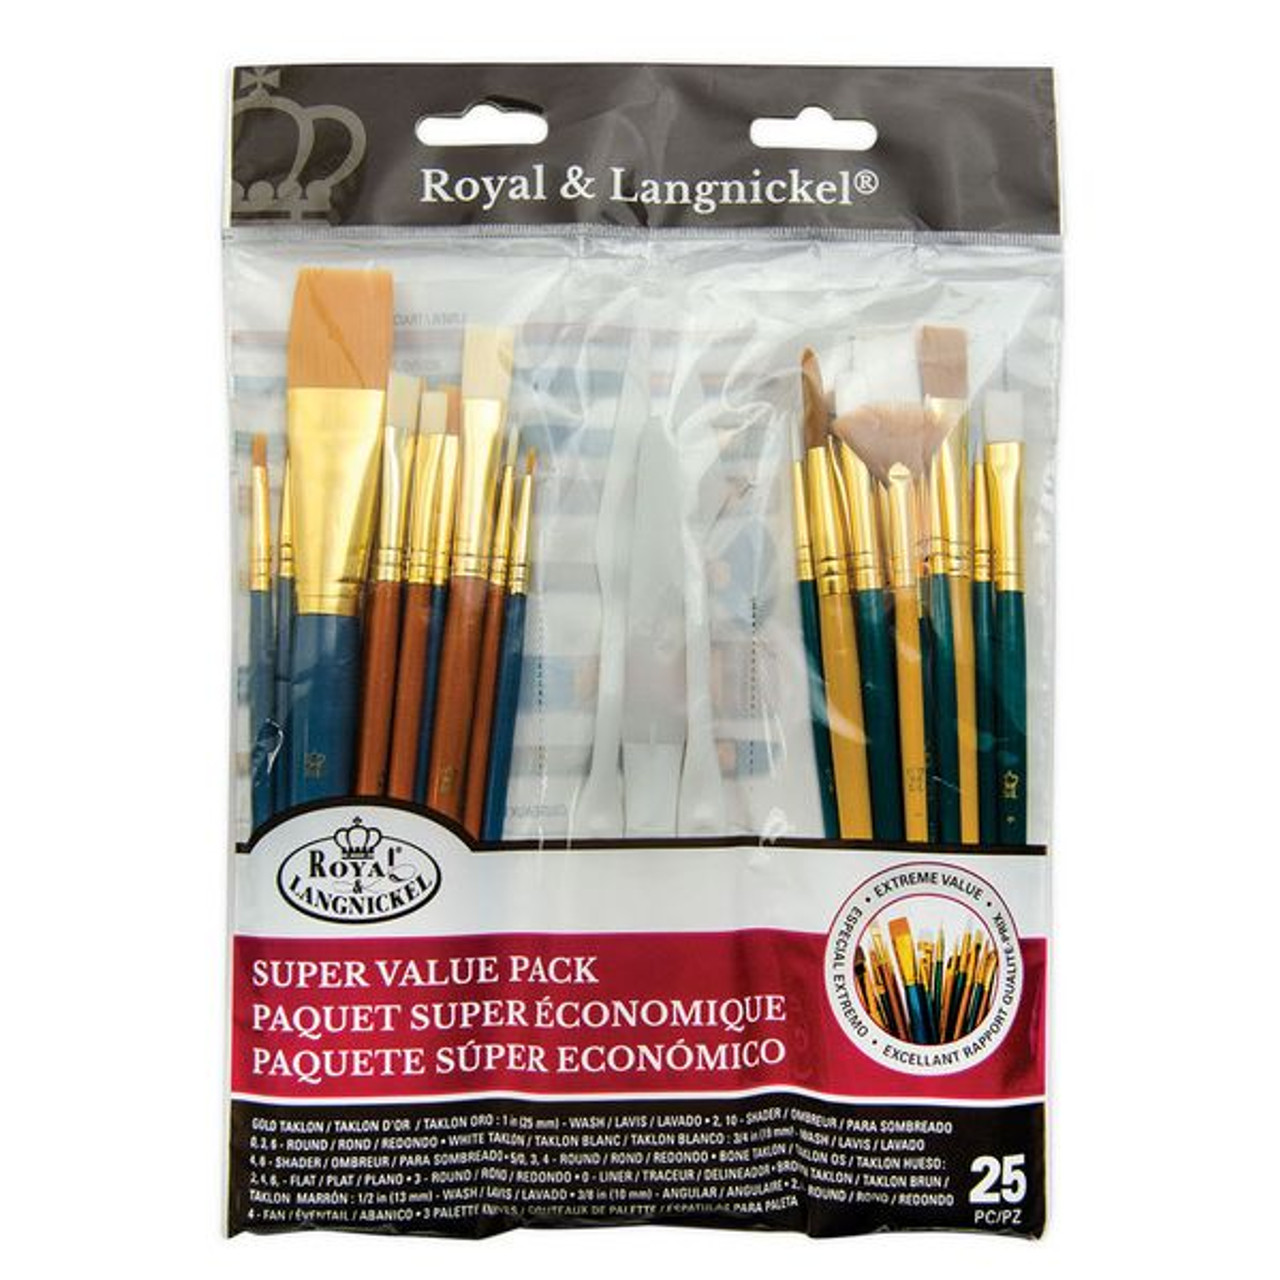 Simply Art Brush, Value Pack - 25 brush